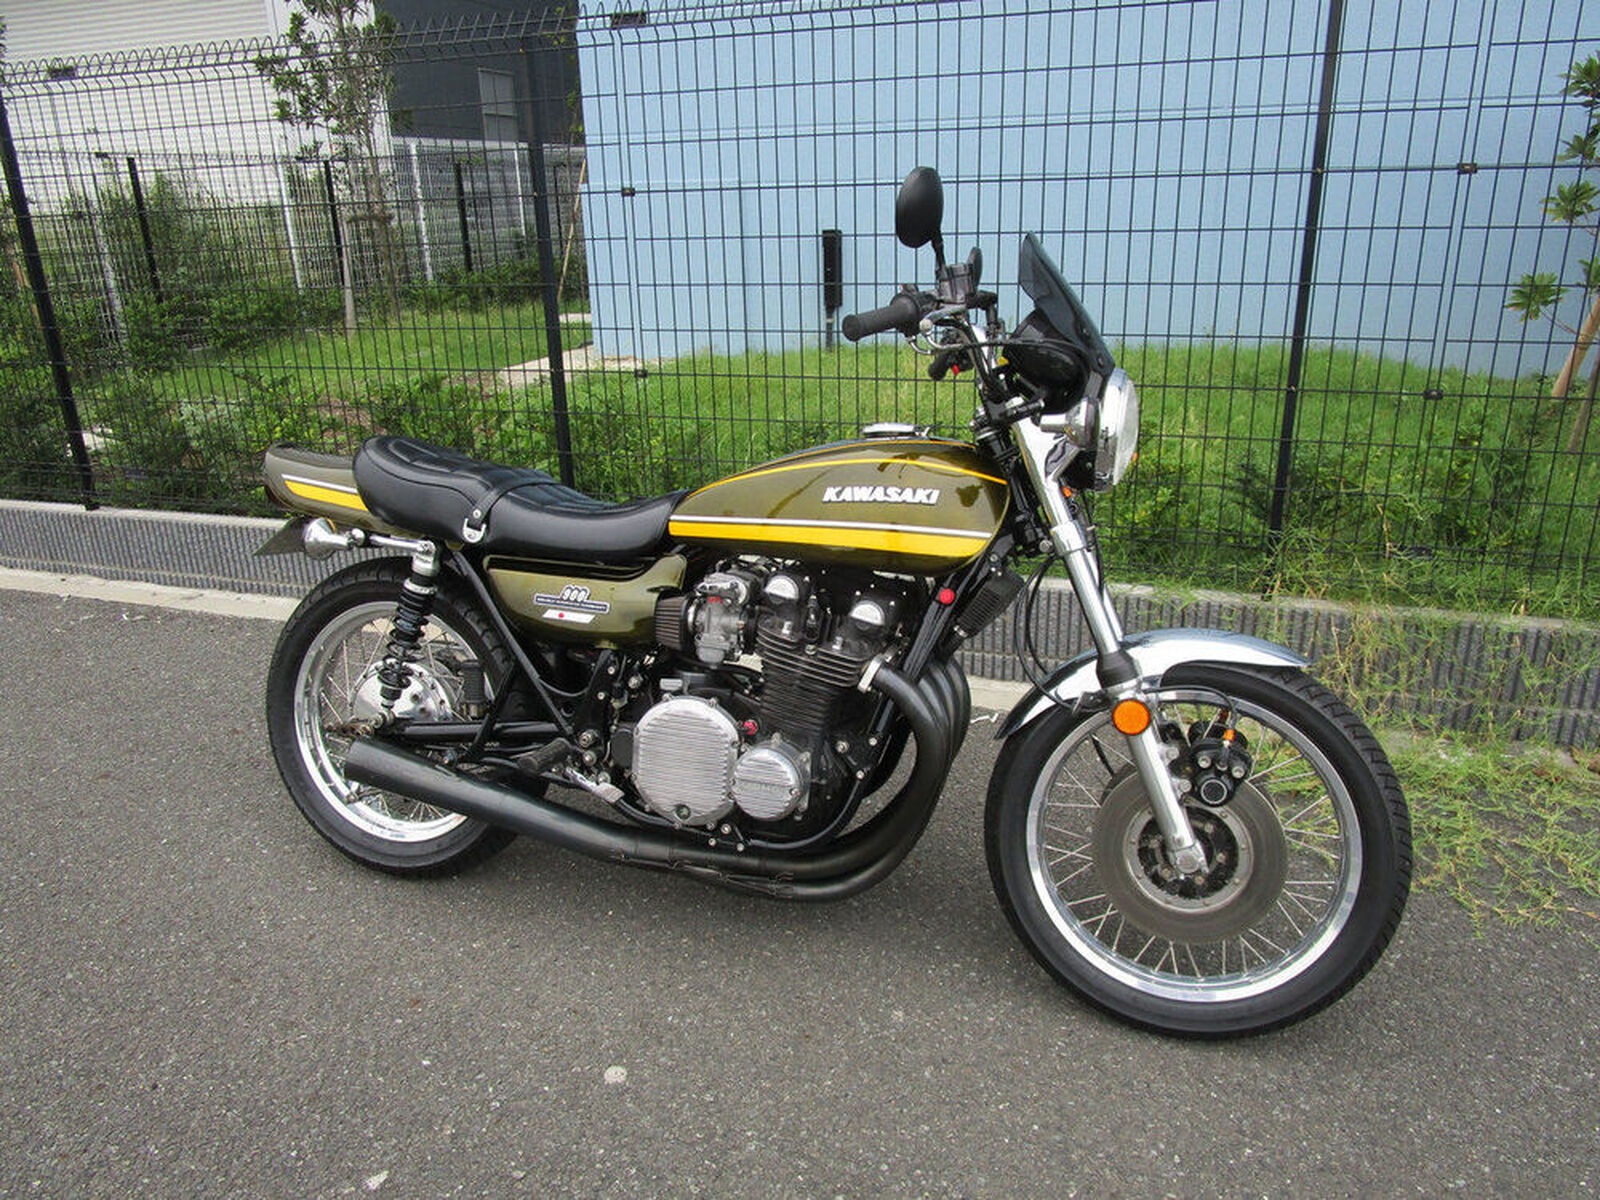 Kenさんの愛車kawasaki Z1 900super4 1974年式 Myバイク ウェビックコミュニティ